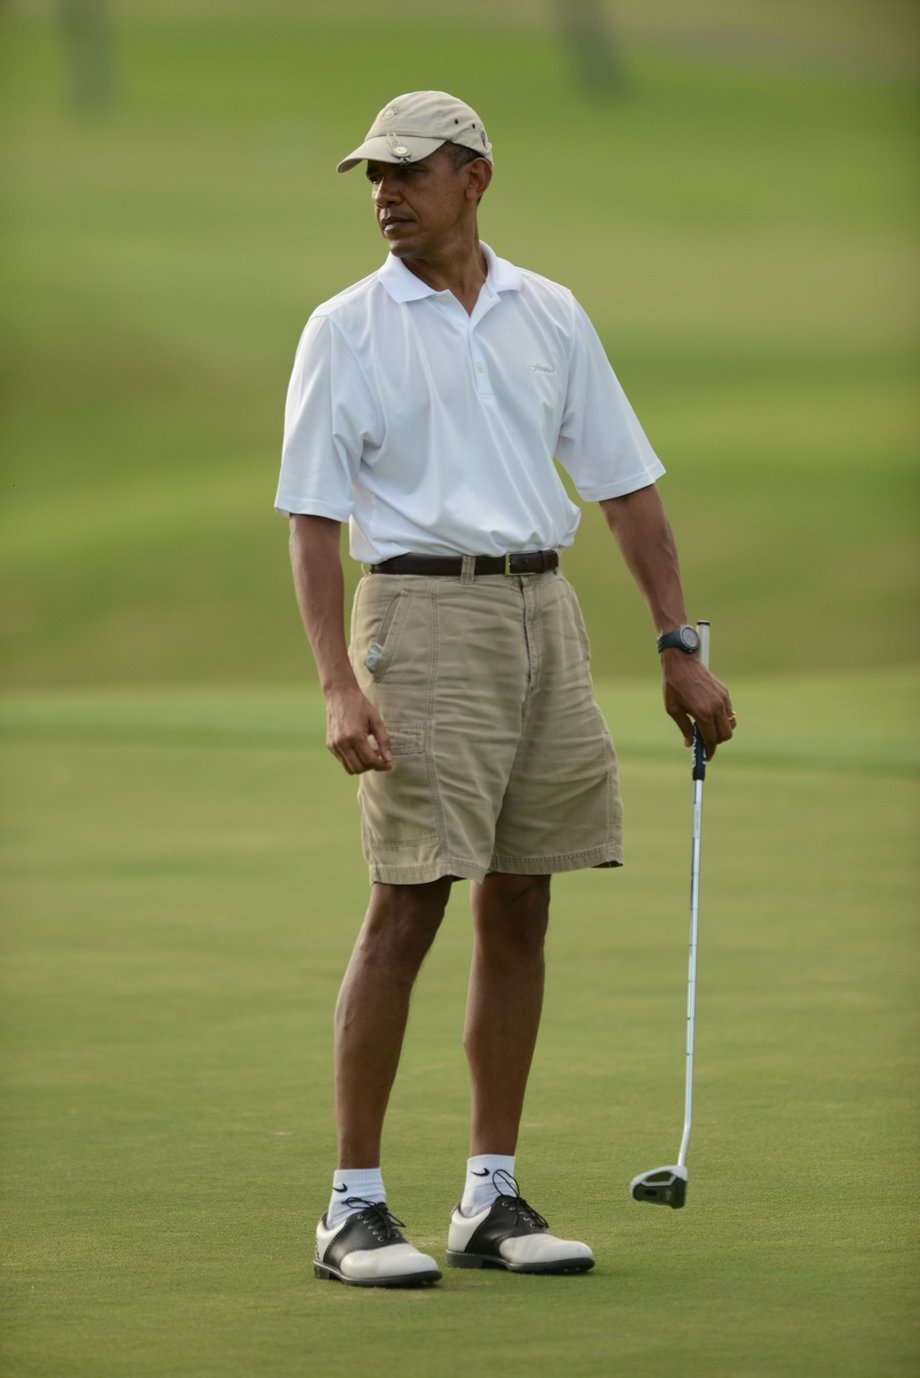 Obama golfing in 2014.